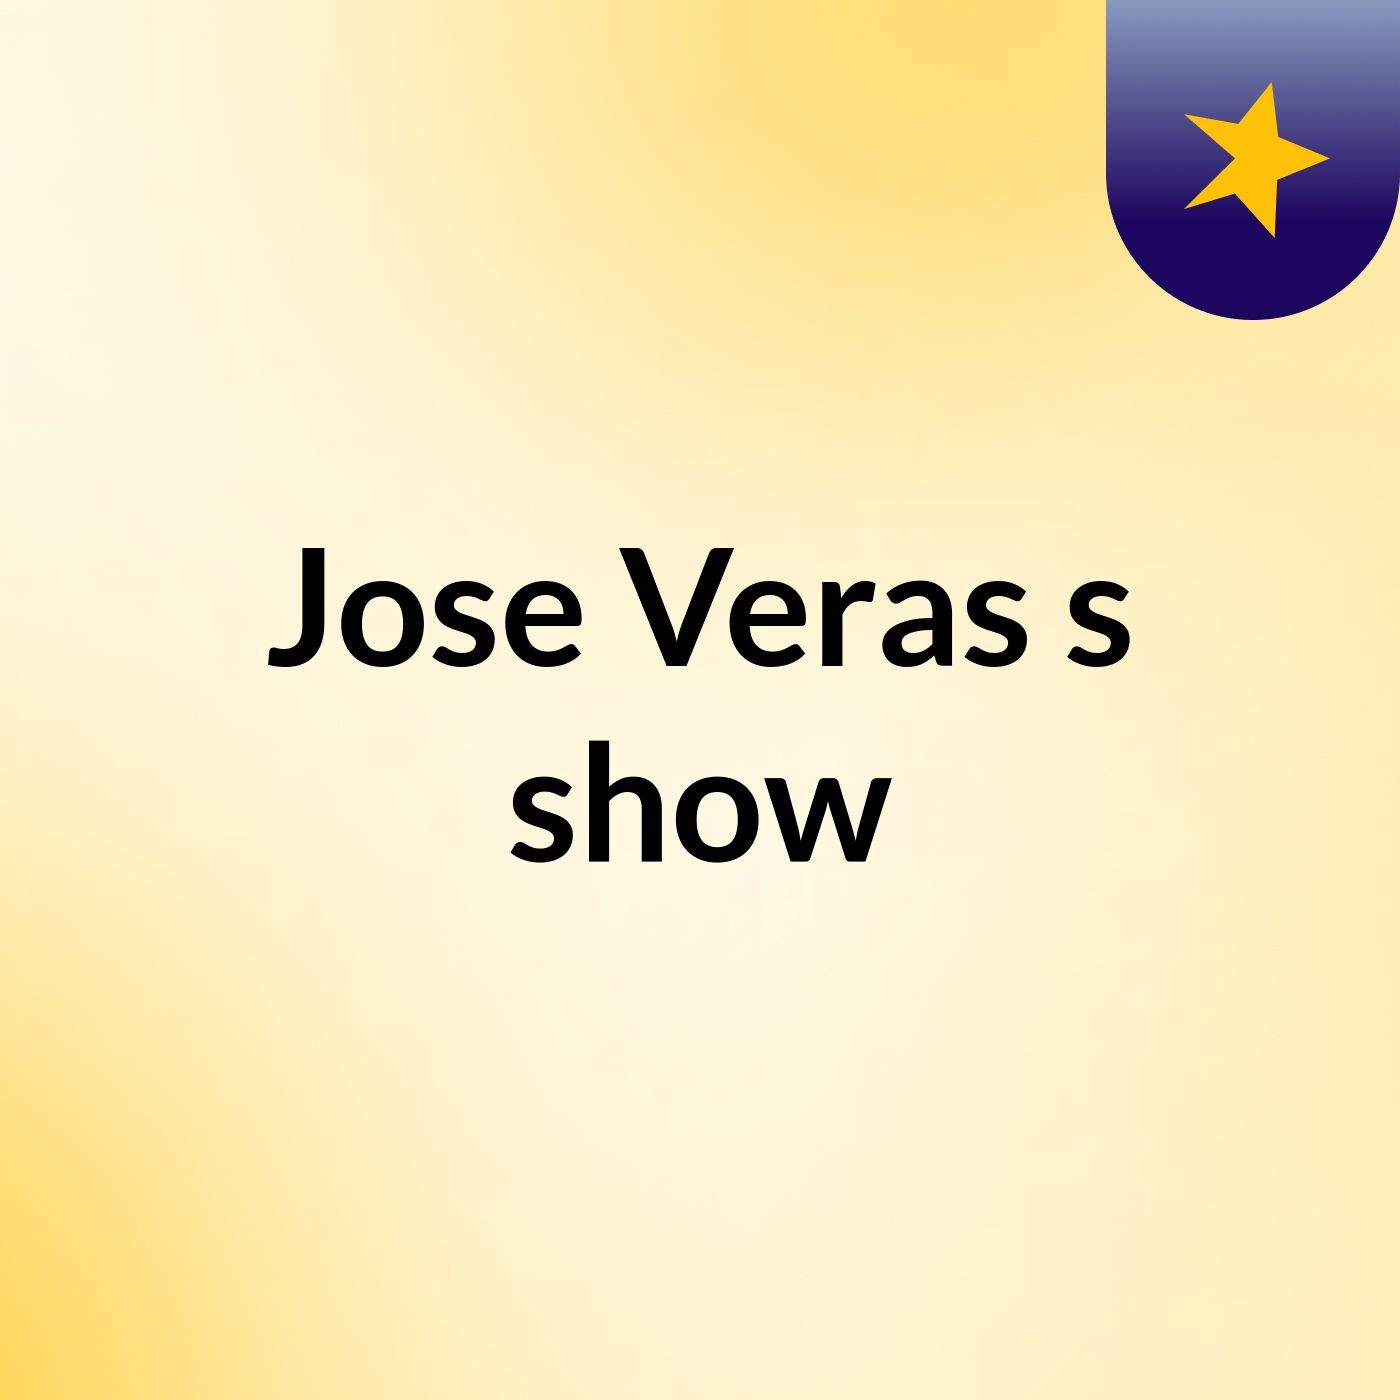 Jose Veras's show